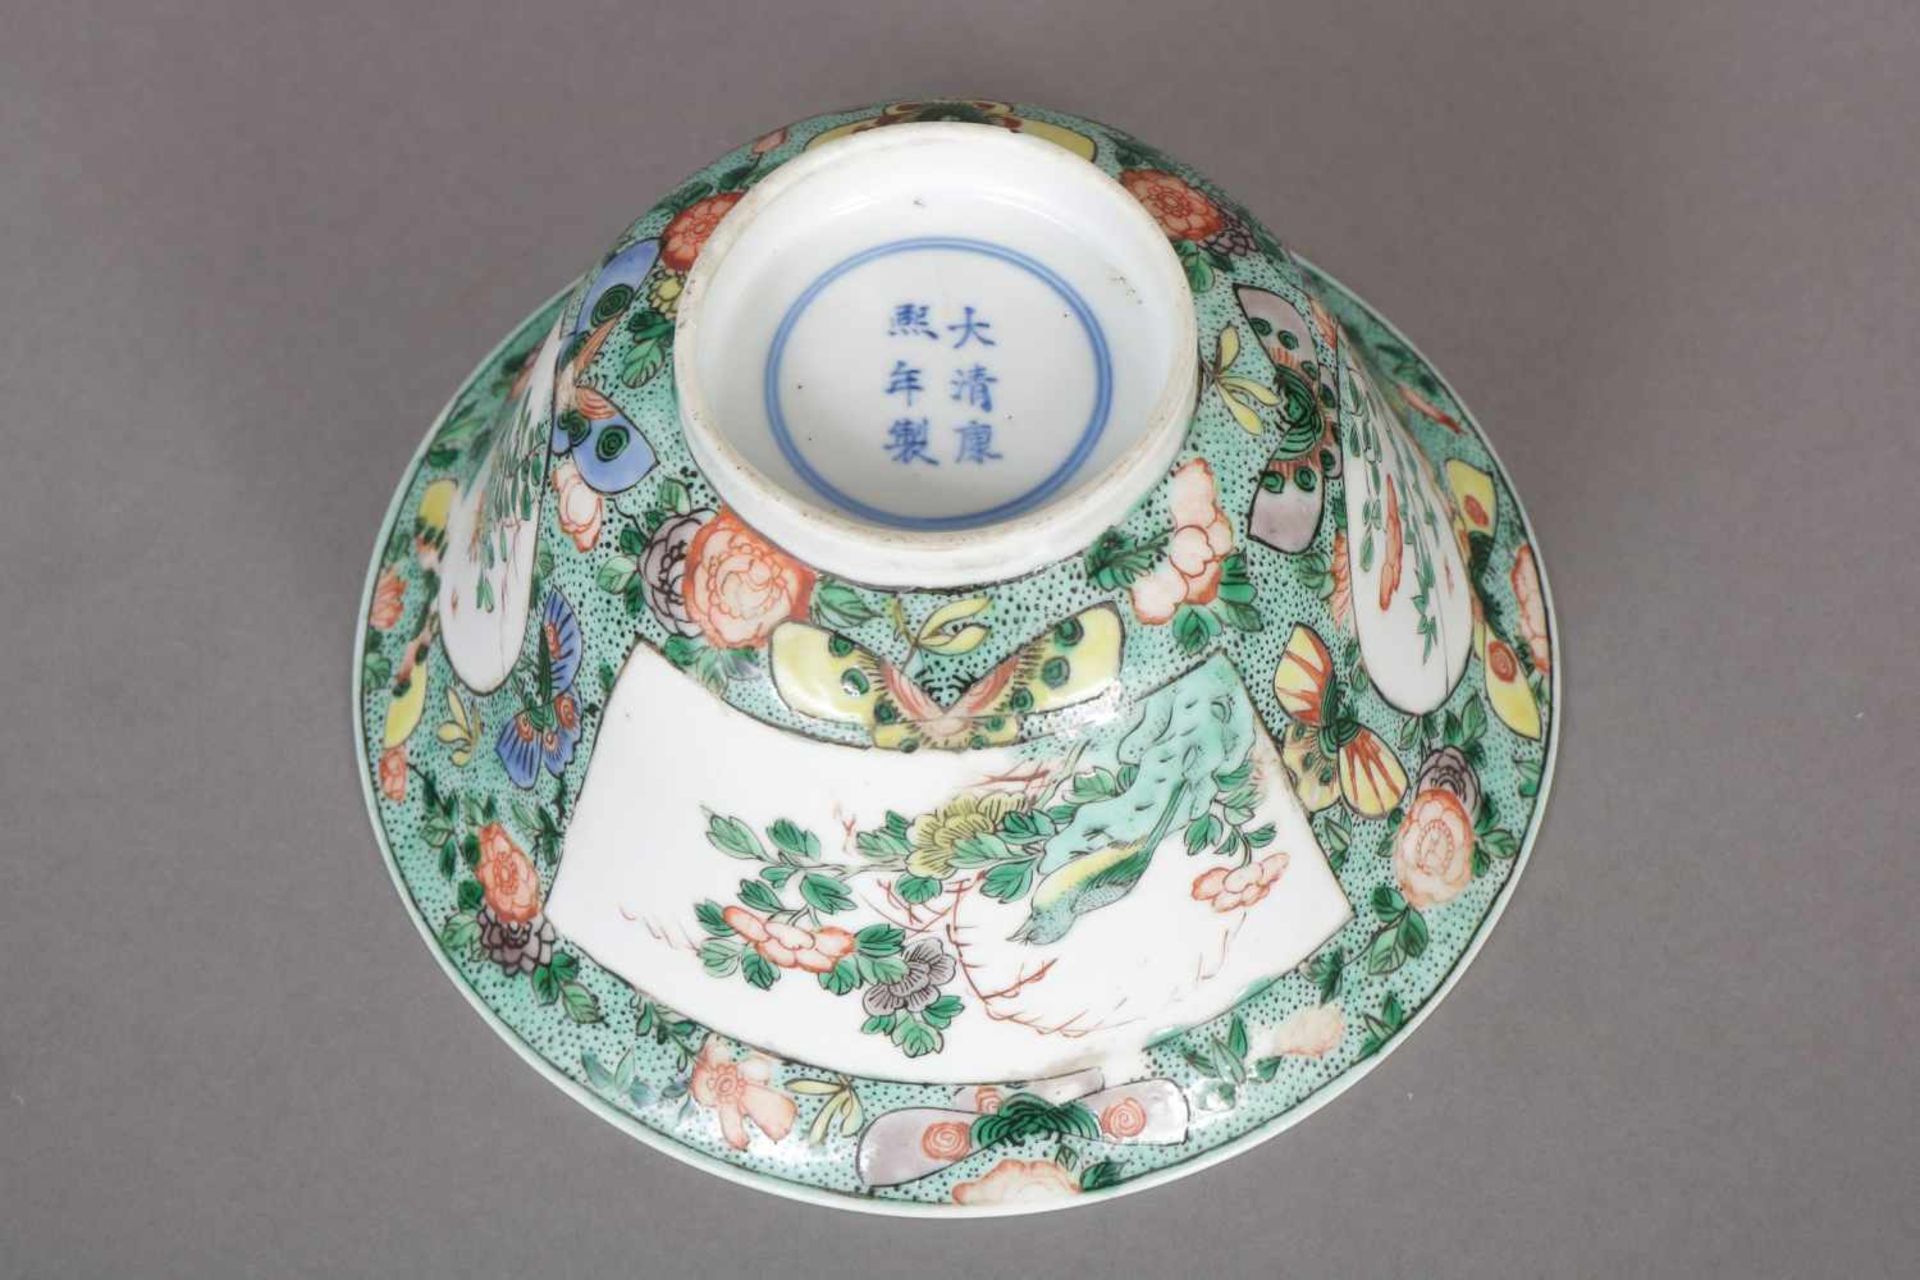 Chinesische Porzellanschale wohl Kangxi (1654-1722), Qing-Dynastie, runde Schale auf kurzem - Image 2 of 2